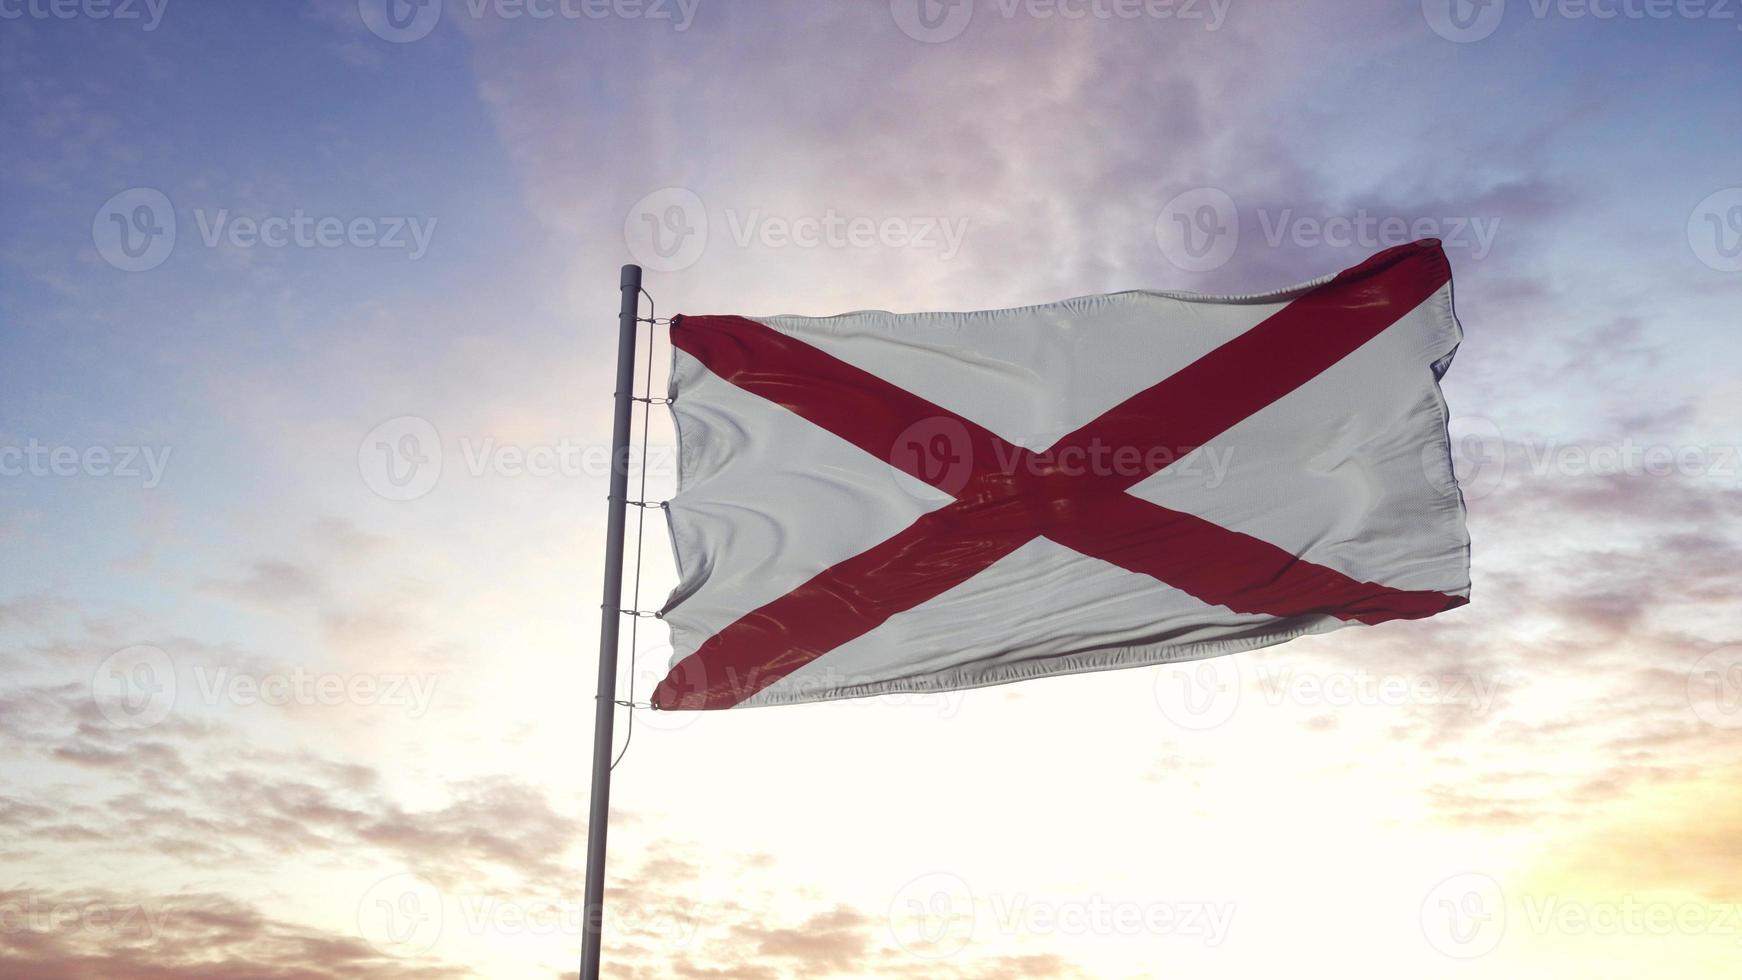 bandera estatal de alabama ondeando en el viento. fondo de cielo dramático. ilustración 3d foto